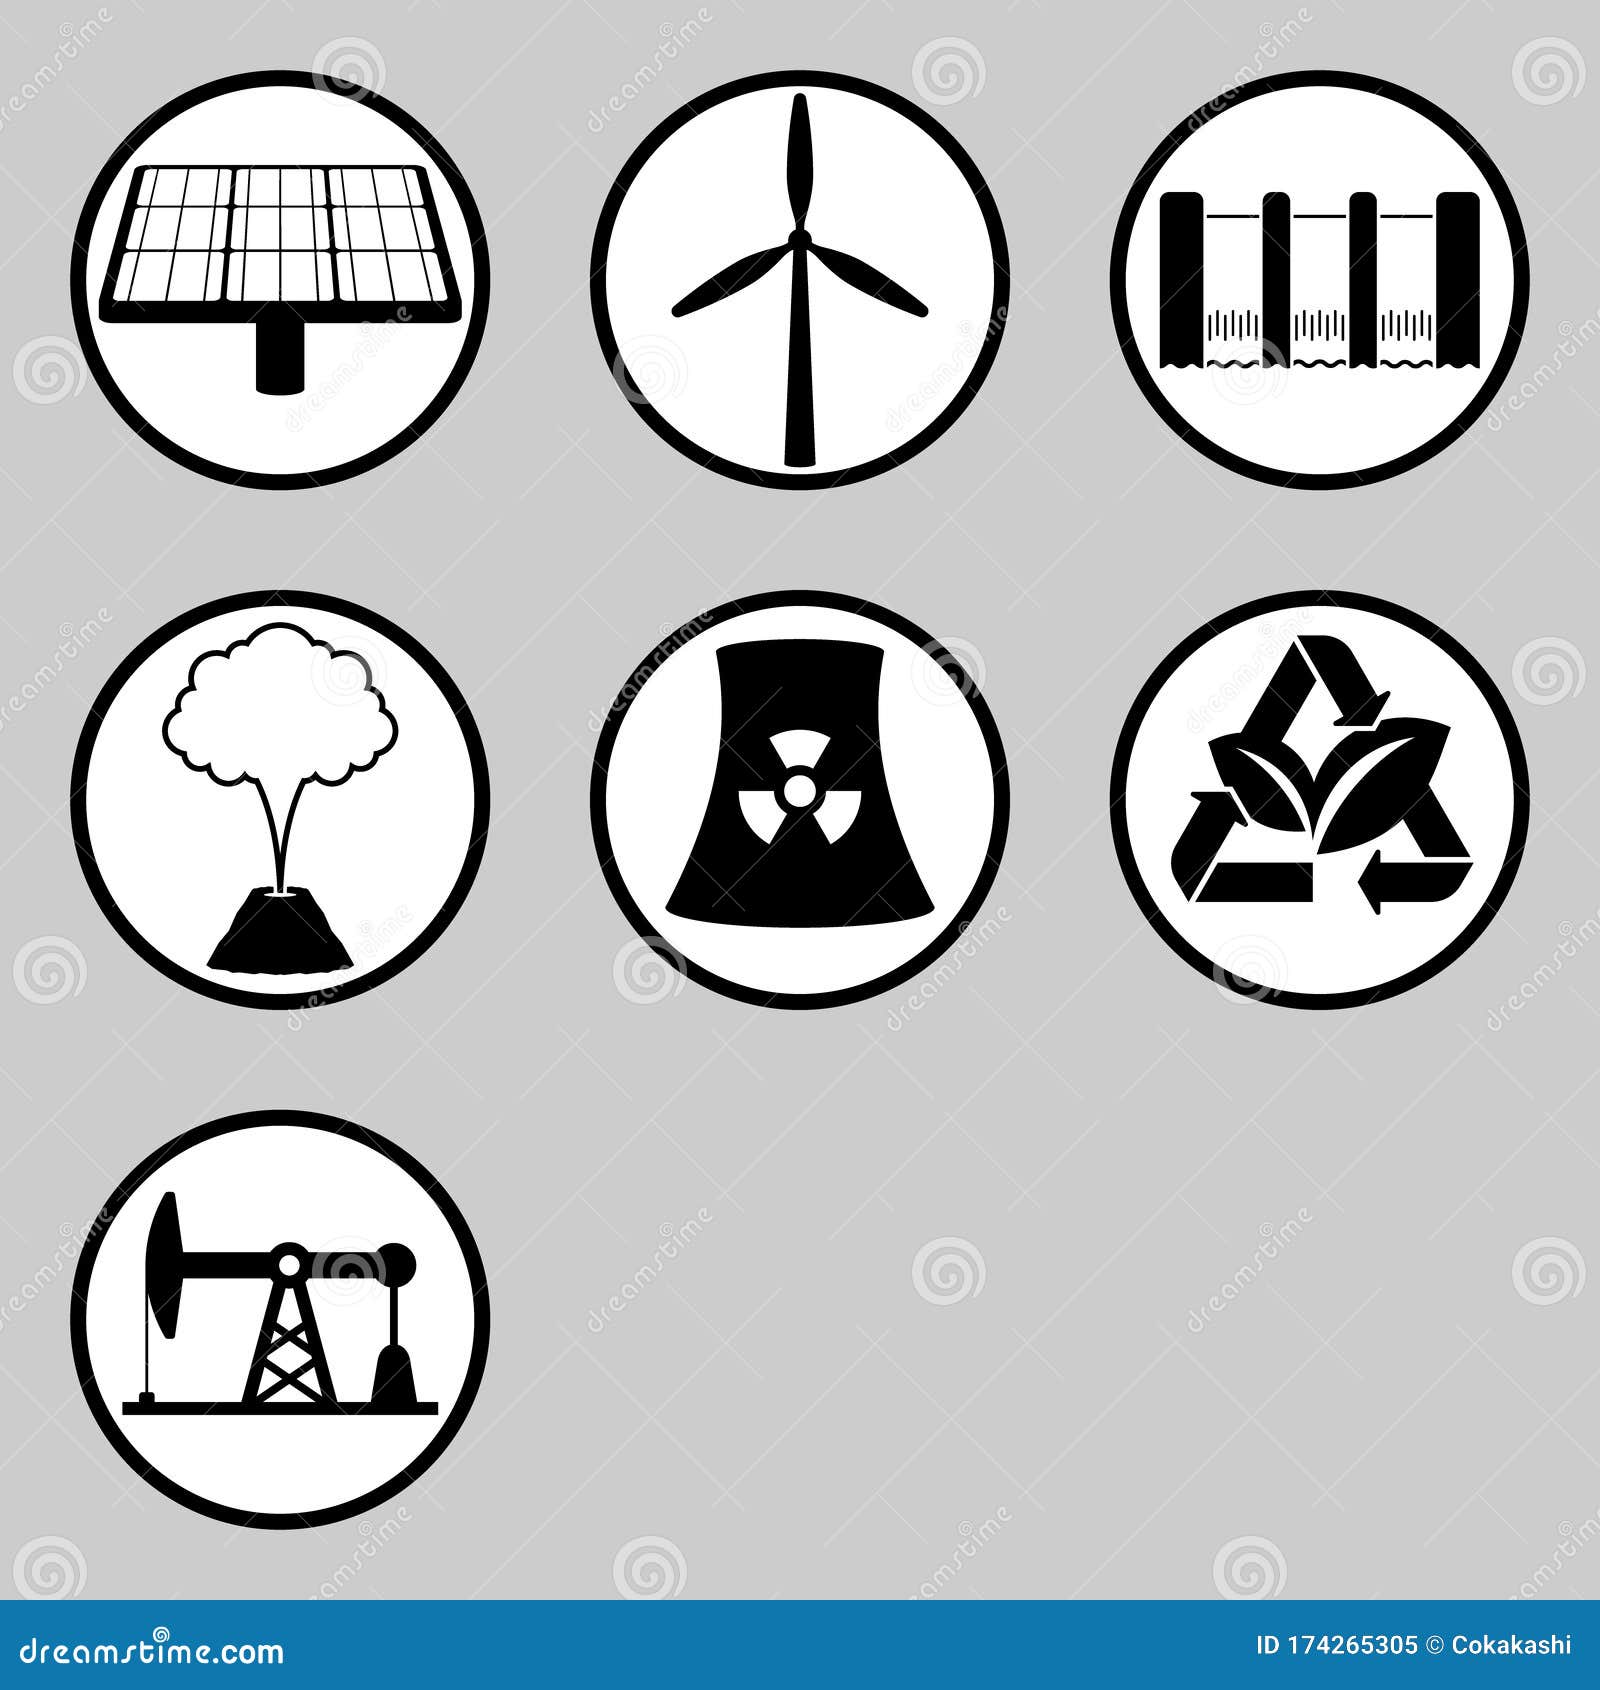 set of renewable energy and wasteful energy icon.